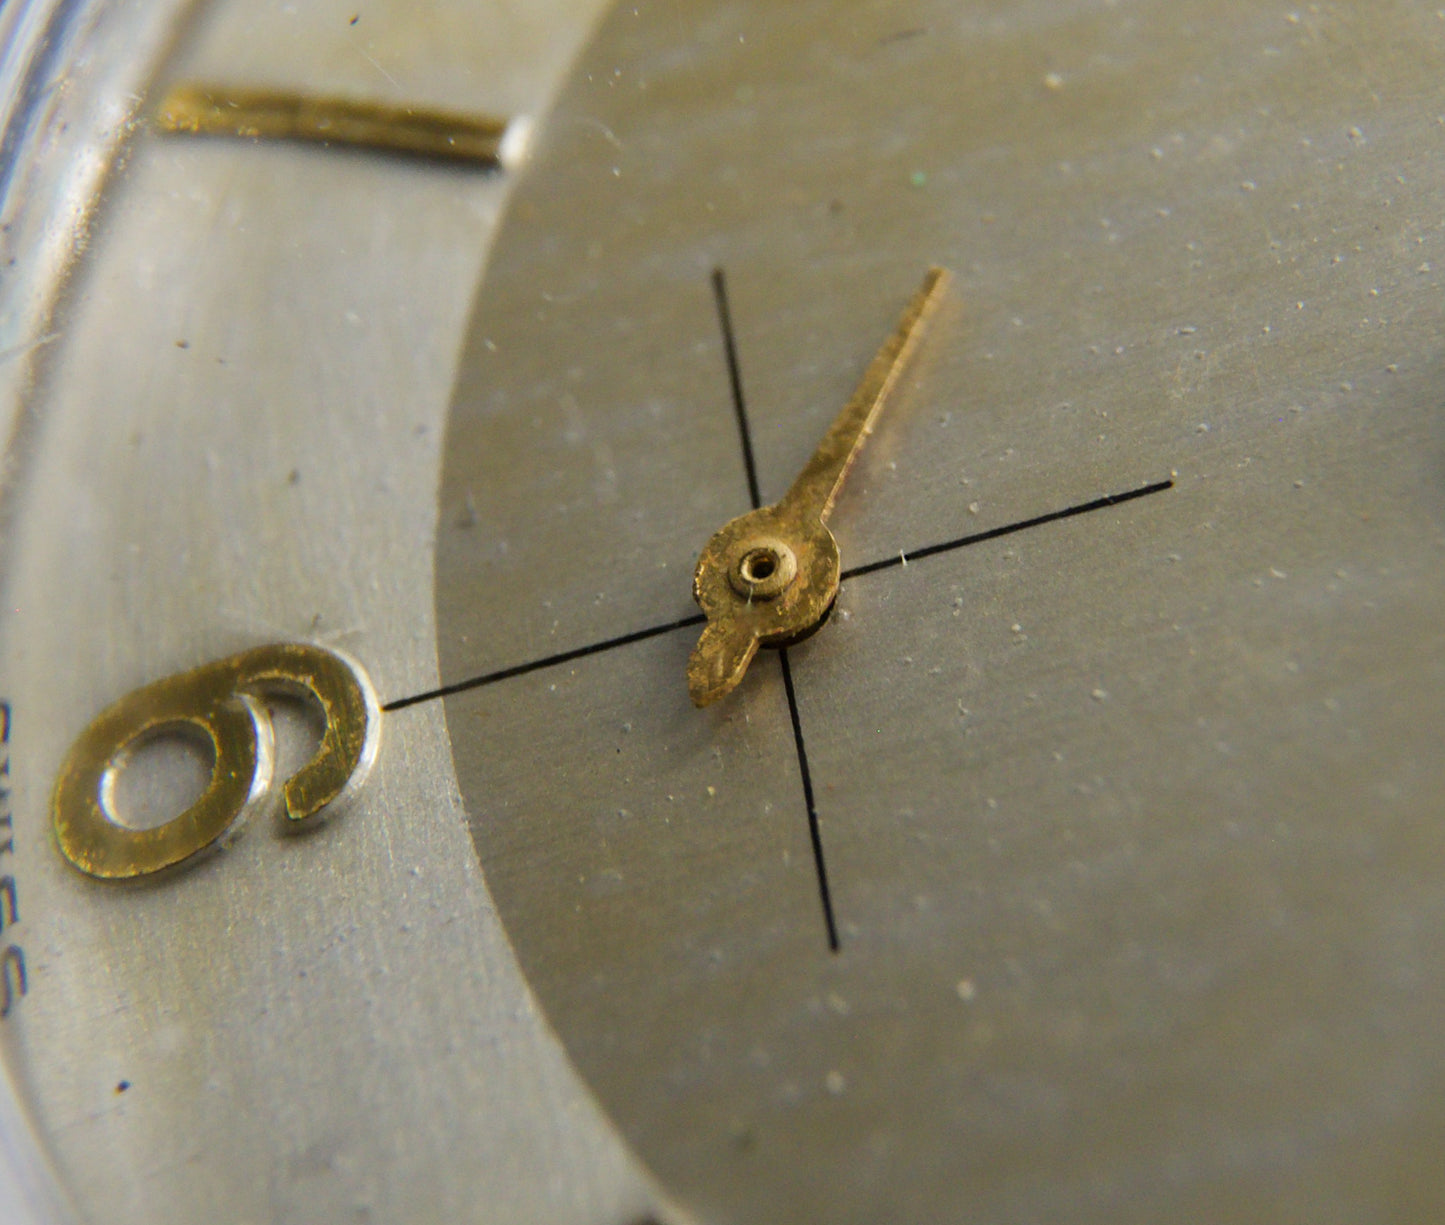 [Serviced] 1950s Gruen Precision 10K Rolled Gold Men's Mechanical Watch